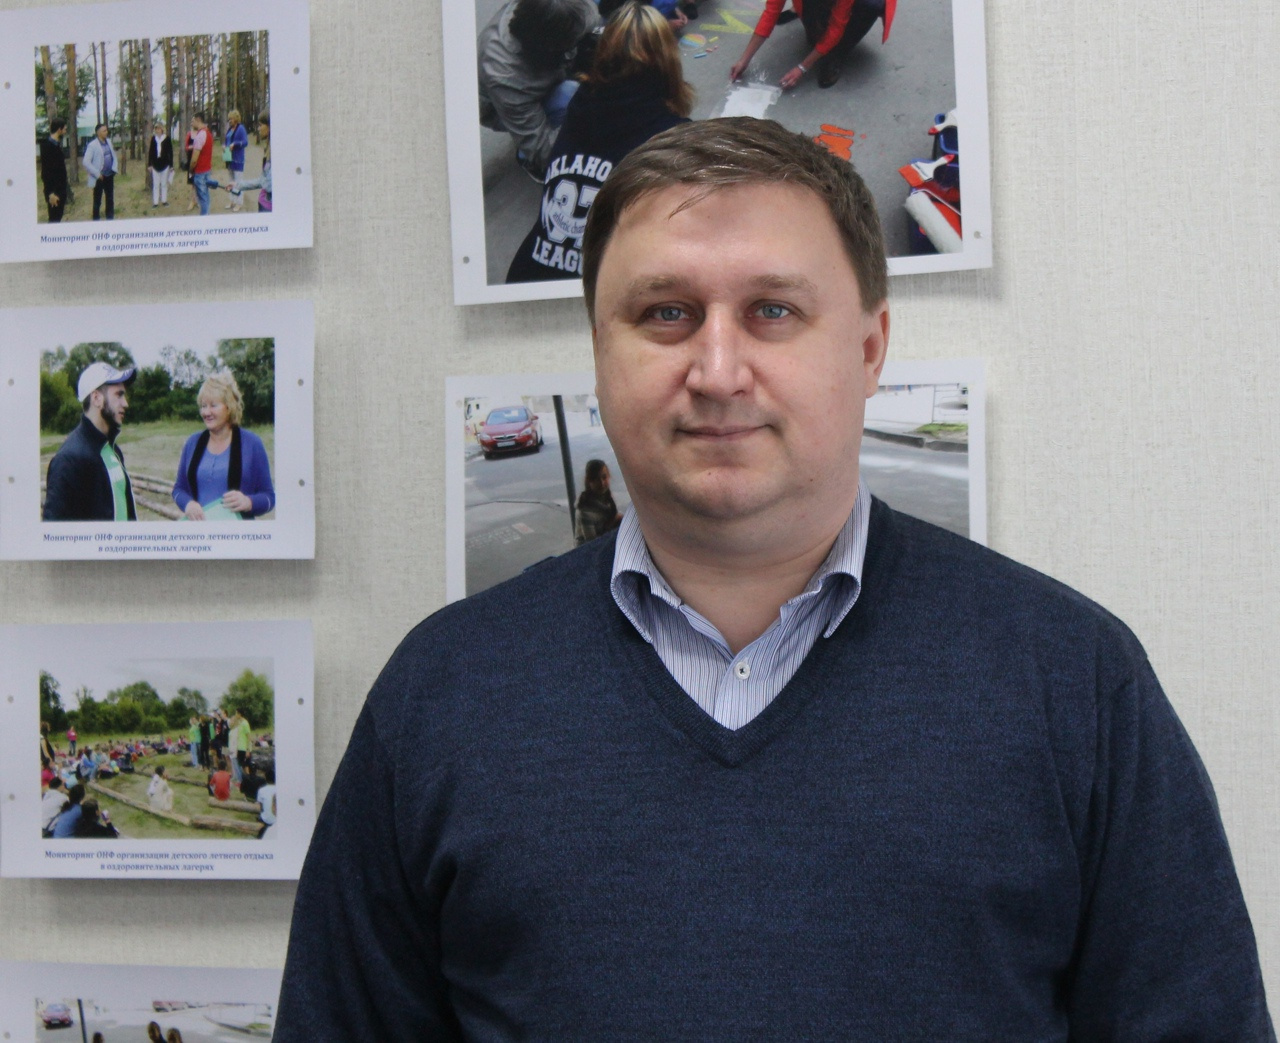 Павел Покровский — член Общественной палаты РФ, сопредседатель регионального штаба ОНФ в Самарской области